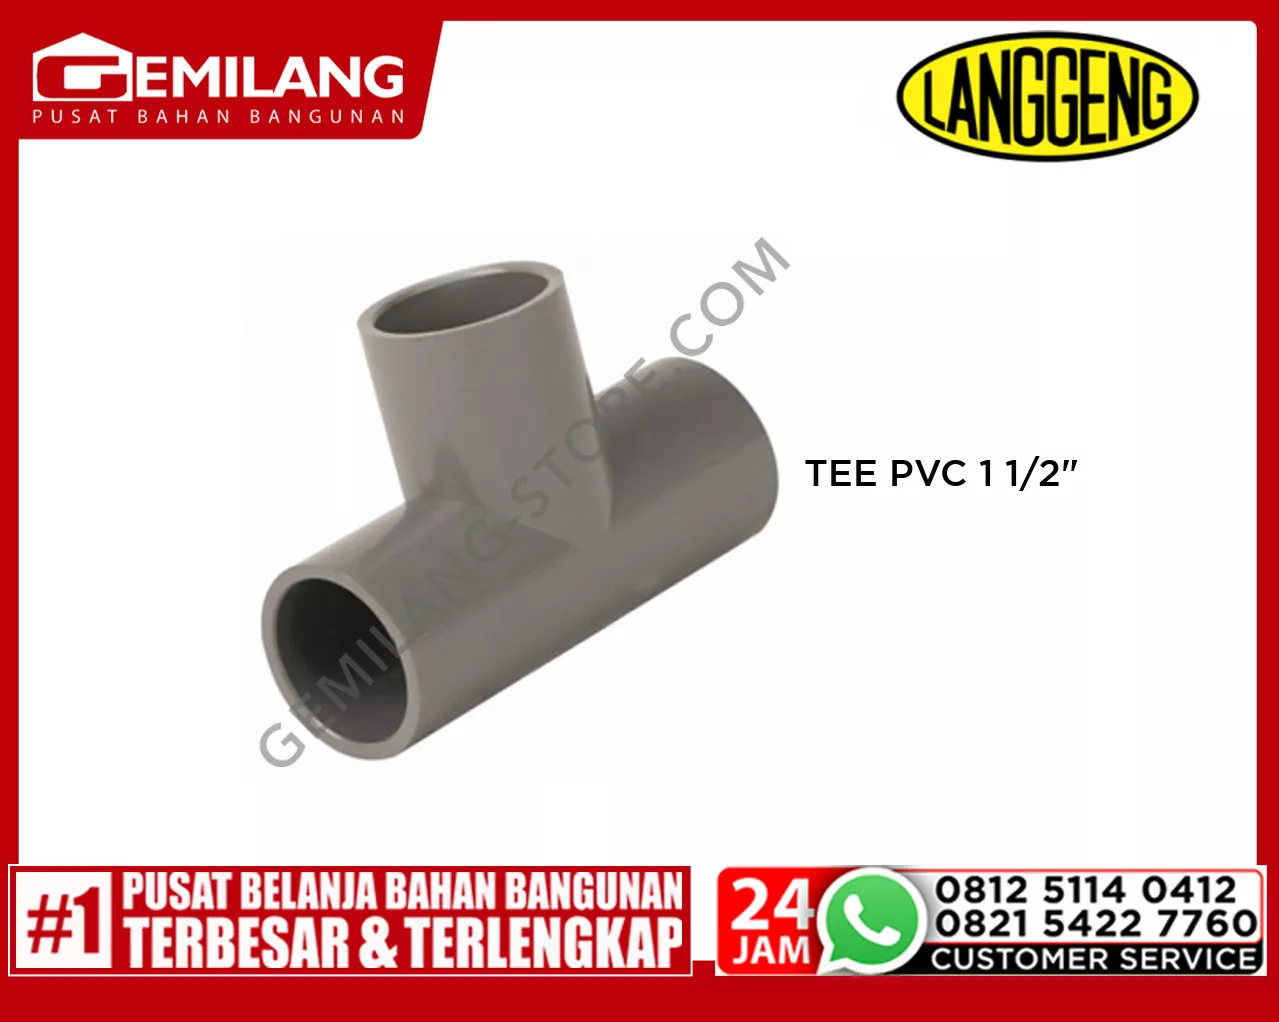 LANGGENG TEE PVC 1 1/2inch